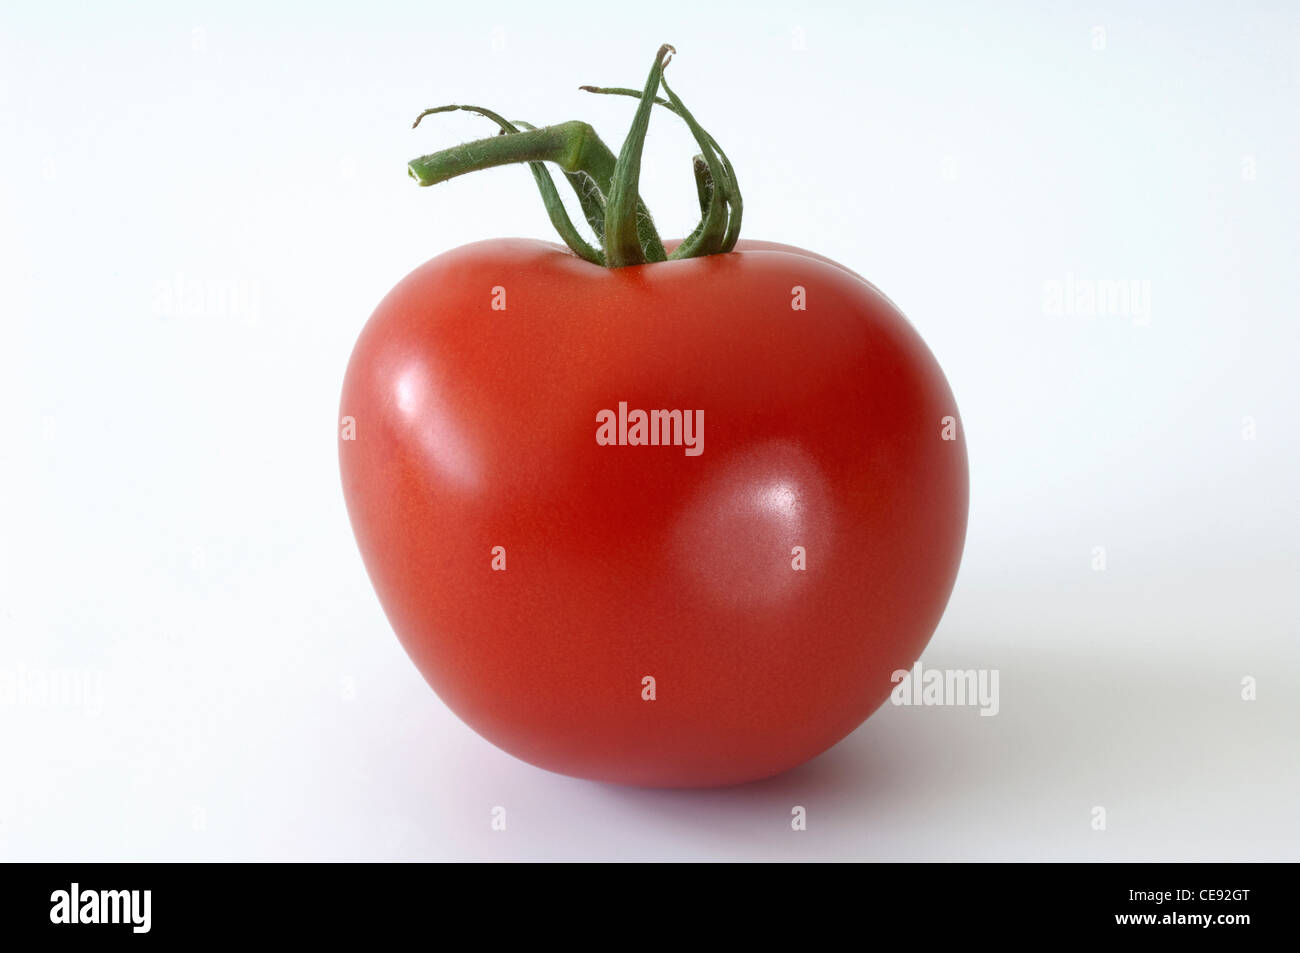 Tomato (Lycopersicon esculentum), ripe fruit. Studio picture against a white background. Stock Photo